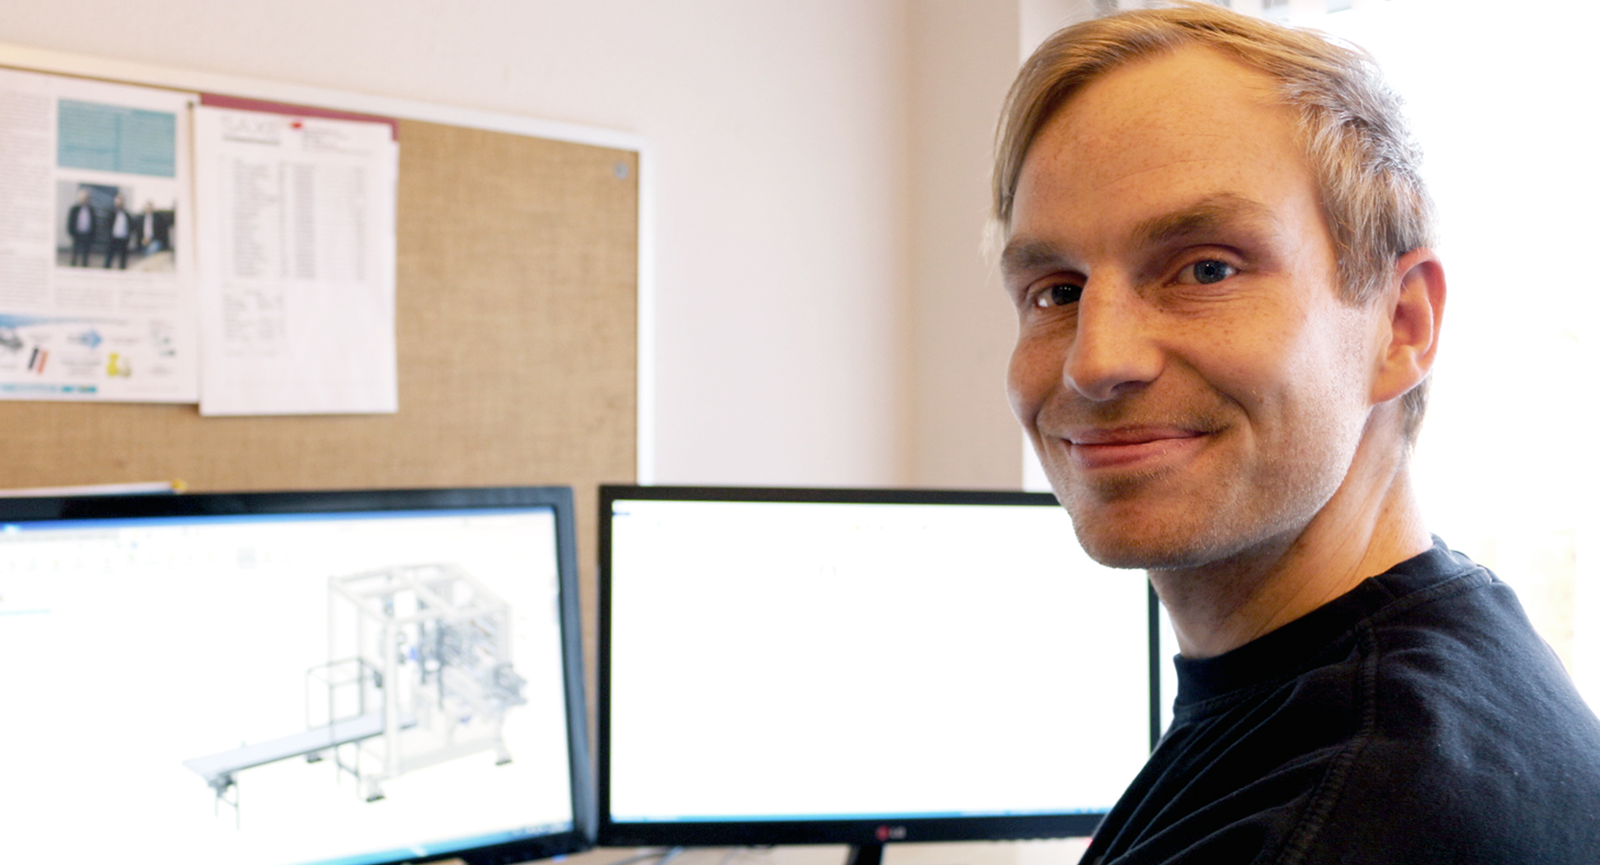 Morten smiler ved sit skrivebord med to skærme i baggrunden